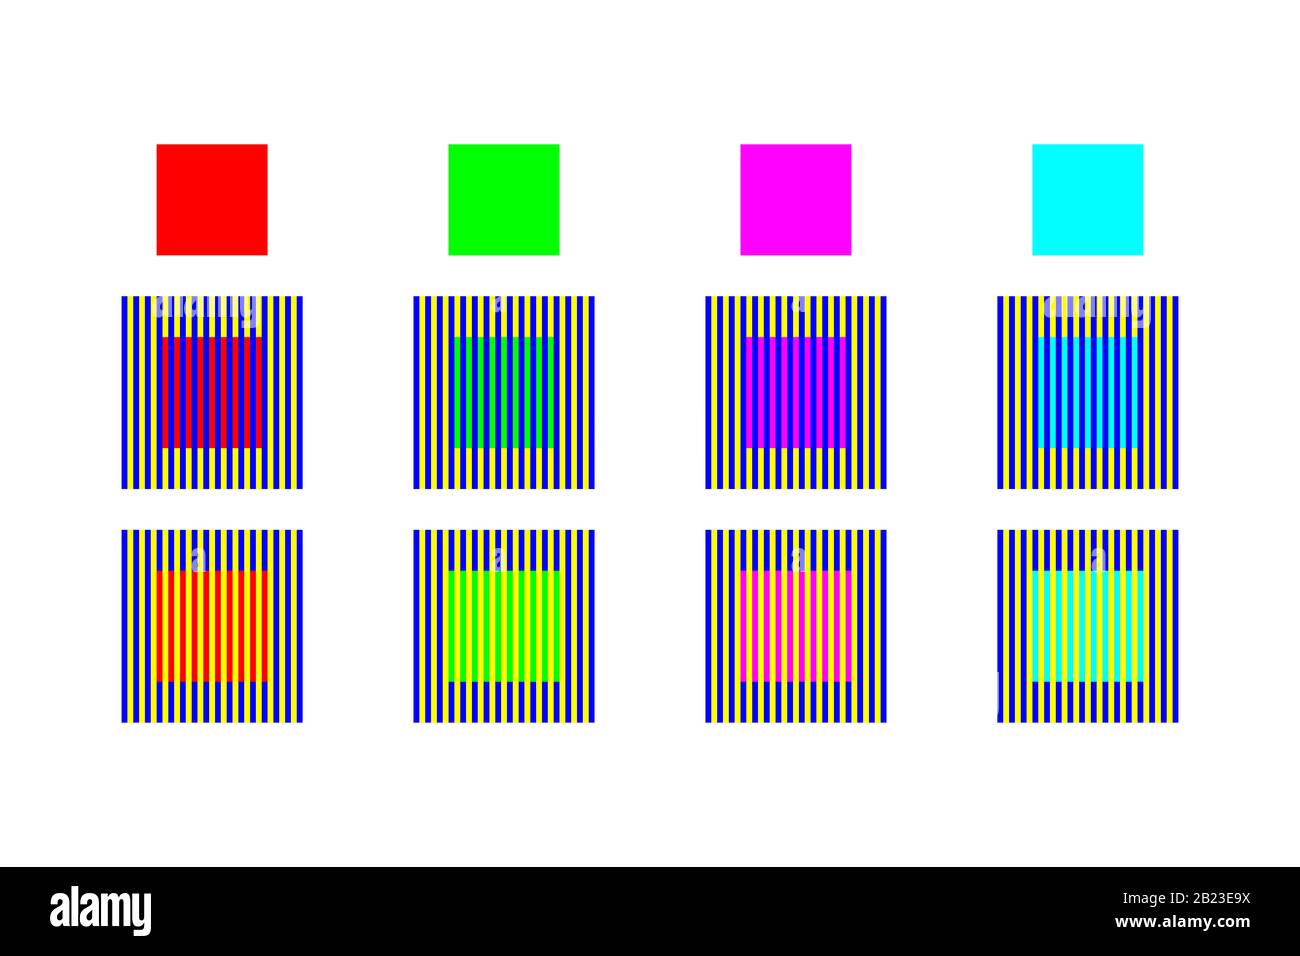 Colore illusione ottica da assimilazione e contrasto. I quattro diversi quadrati di colore sembrano avere colori diversi Foto Stock